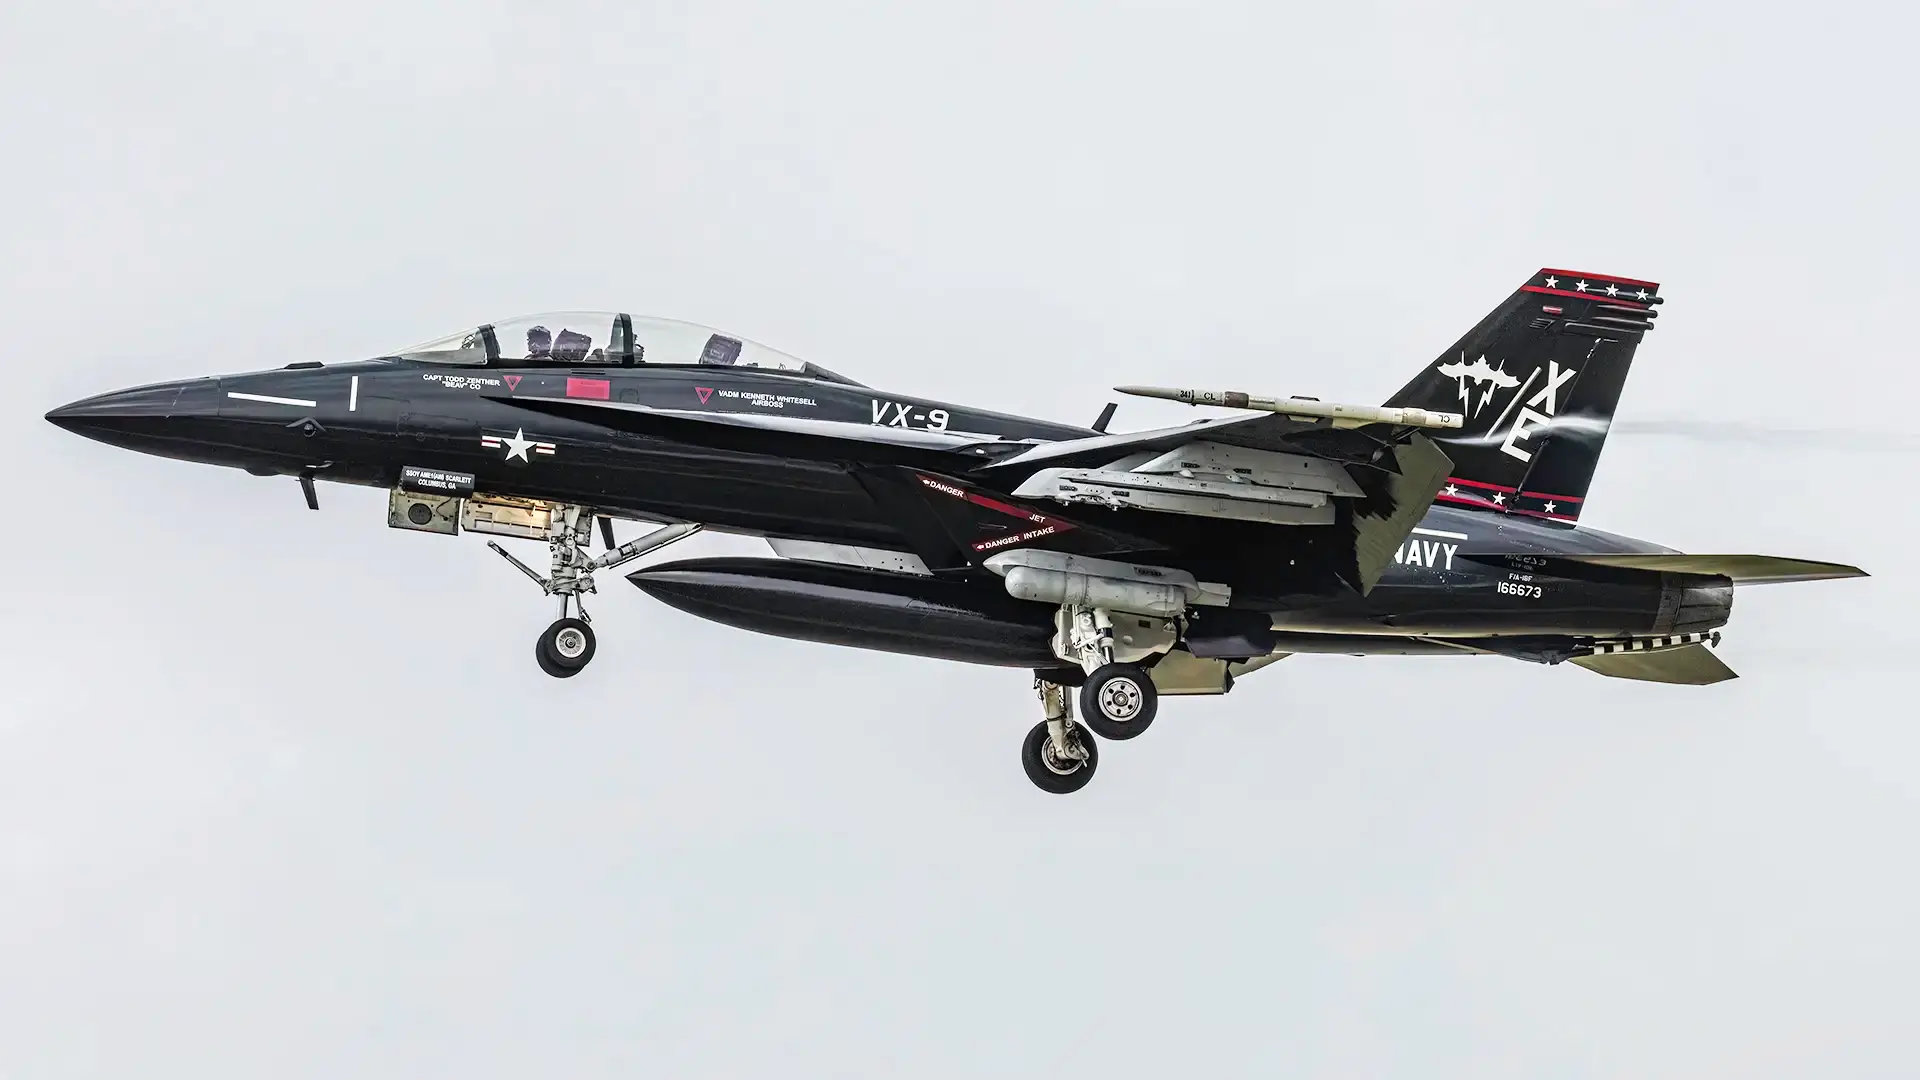 L'US Navy dévoile un F/A-18 Super Hornet en camouflage rétro Vandy-1, mais sans lapin Playboy.